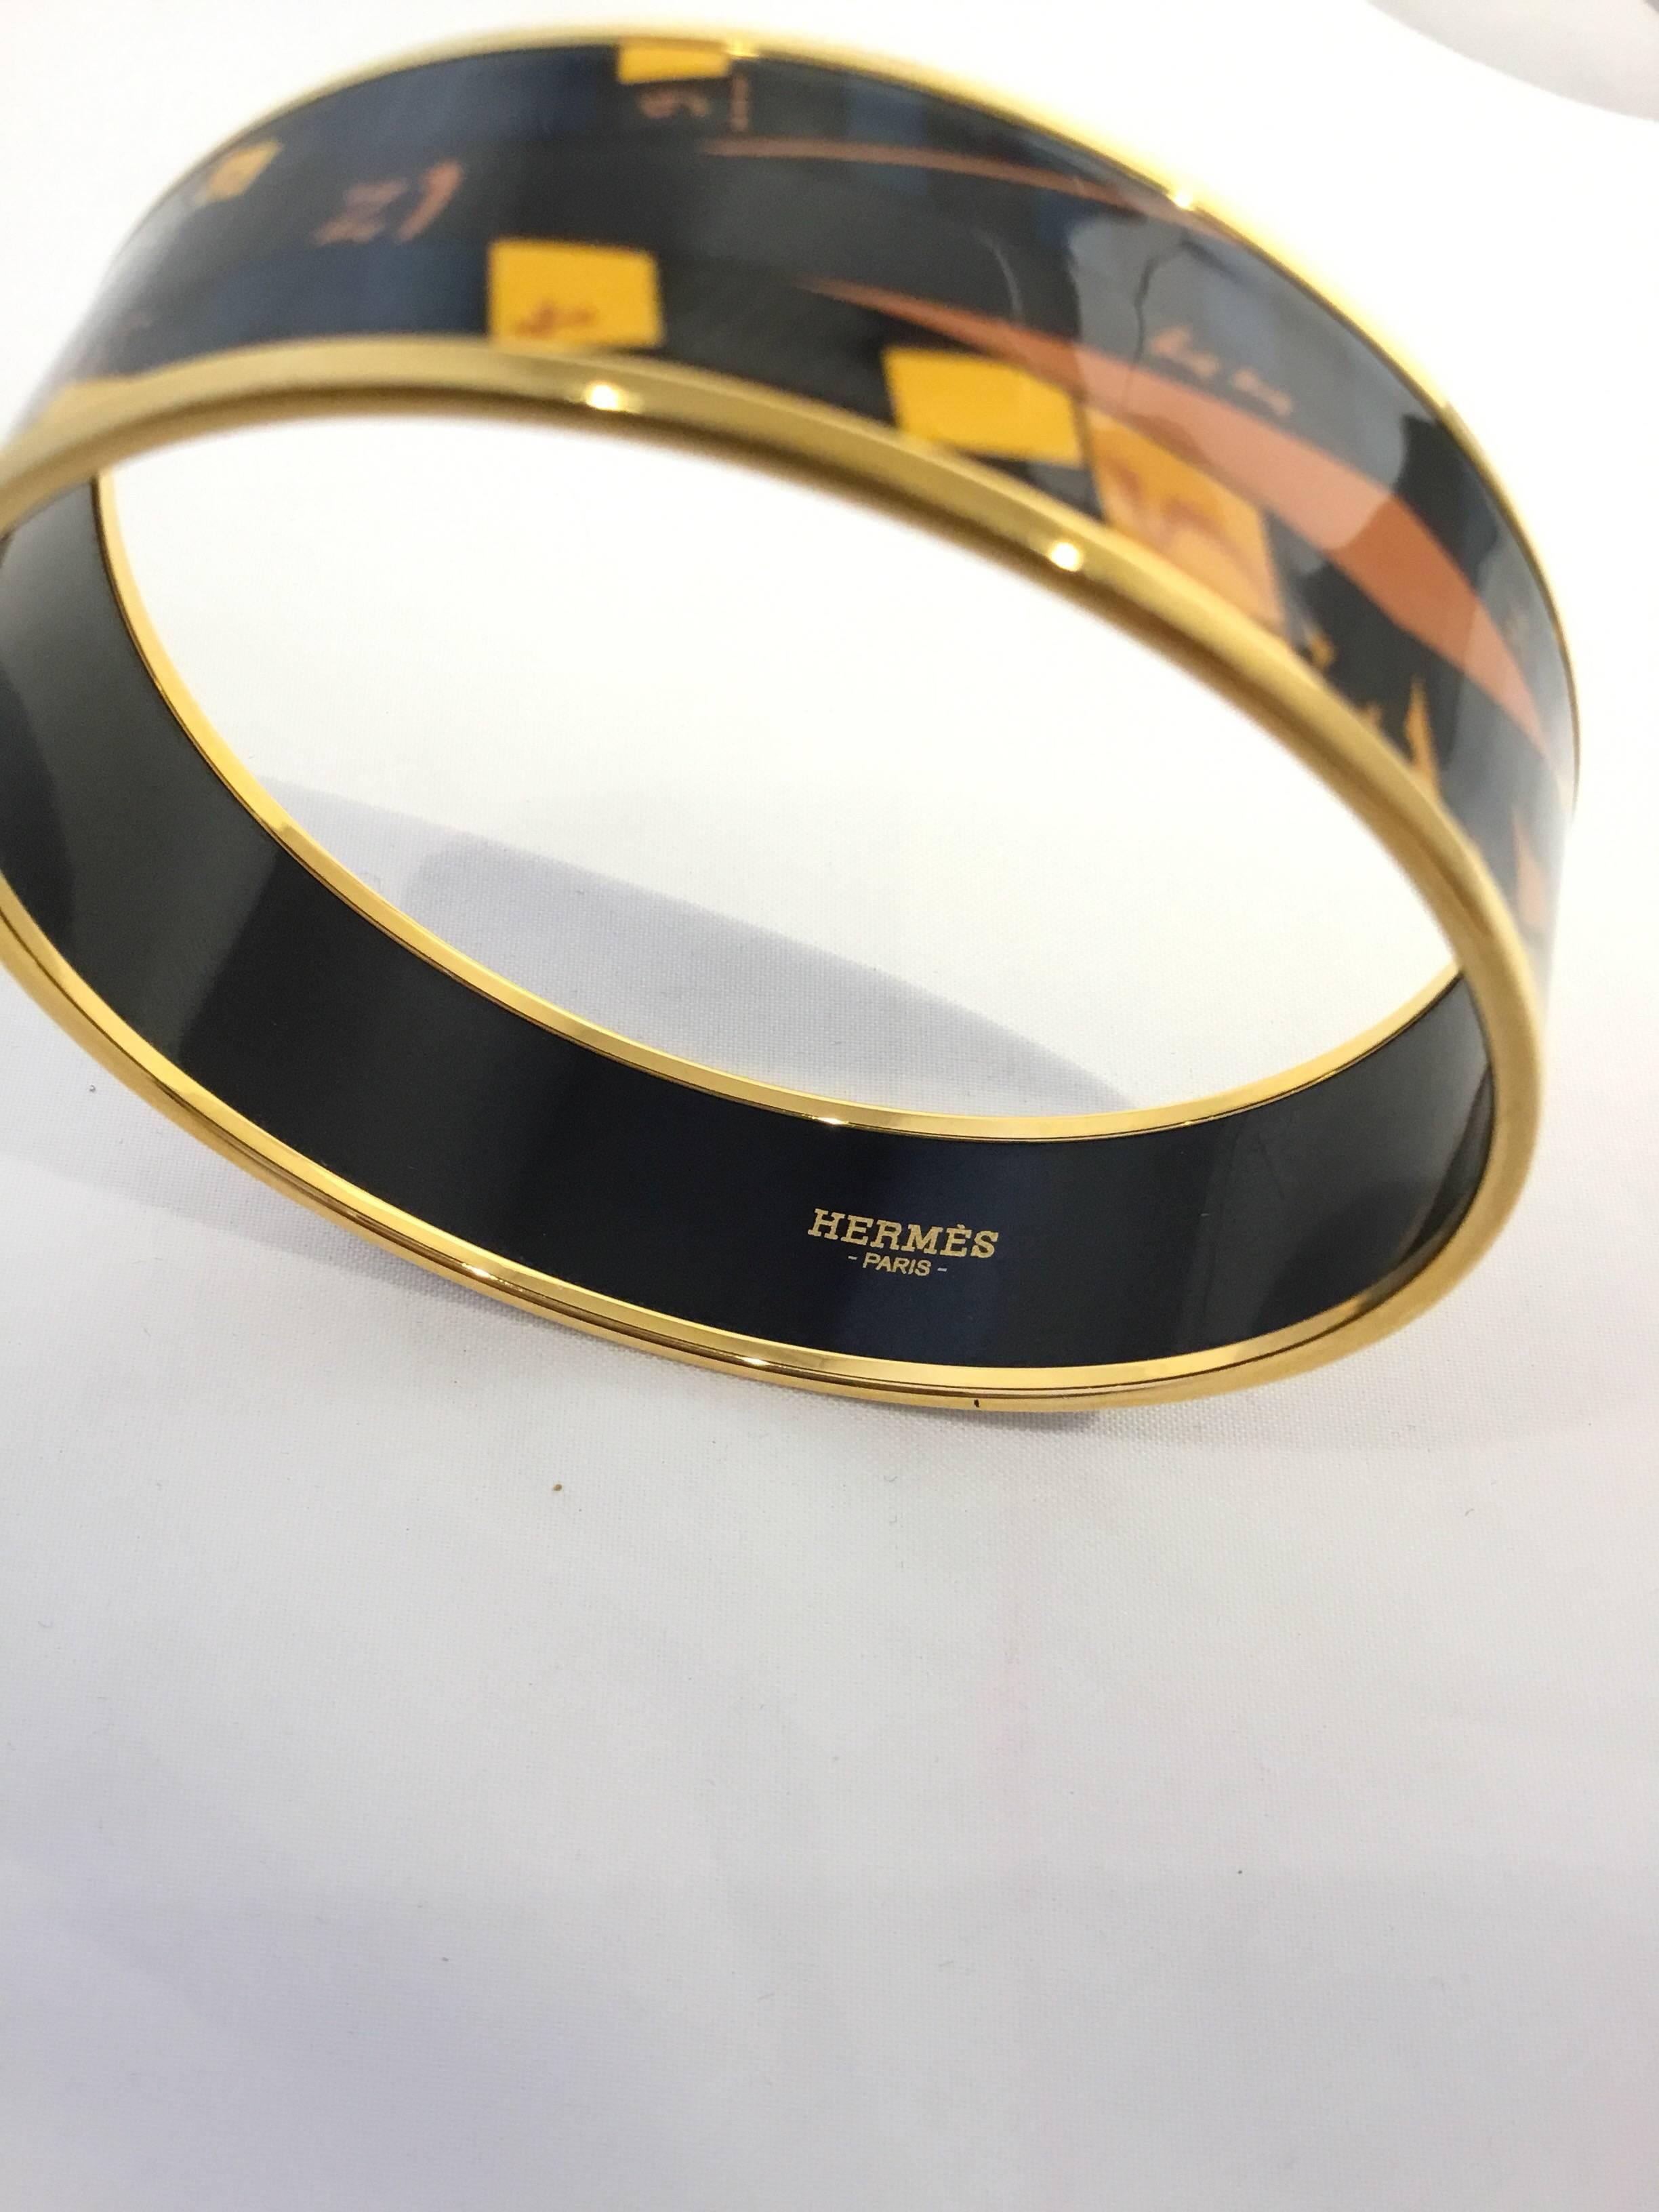 Hermes Paris Multicolor Enamel w/ Gold Bangle Bracelet 2